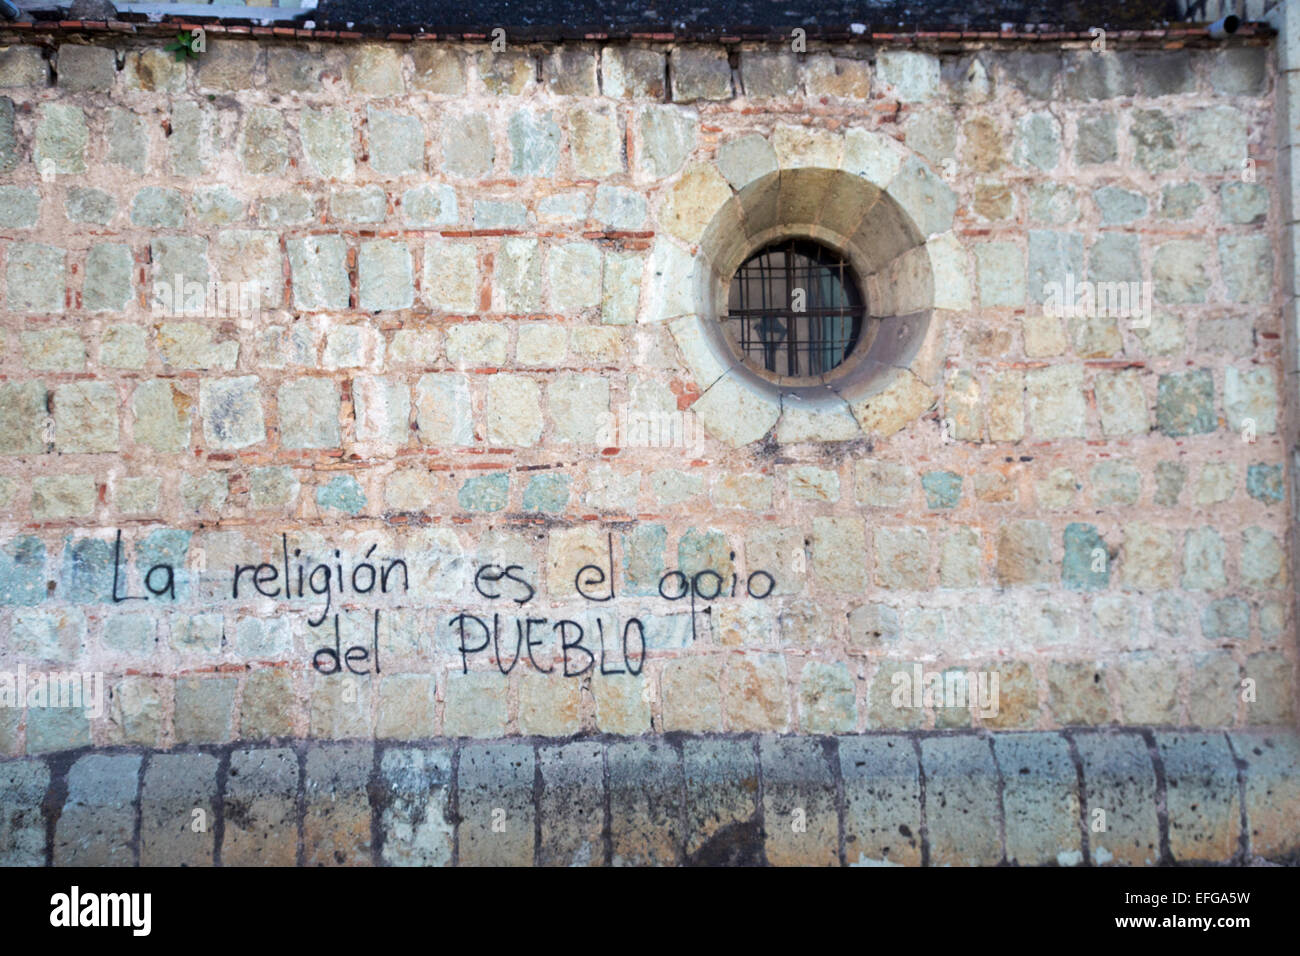 Oaxaca, México - El Graffiti en el muro de la Iglesia de San Felipe Neri cita de Karl Marx: "La religión es el opio del pueblo". Foto de stock